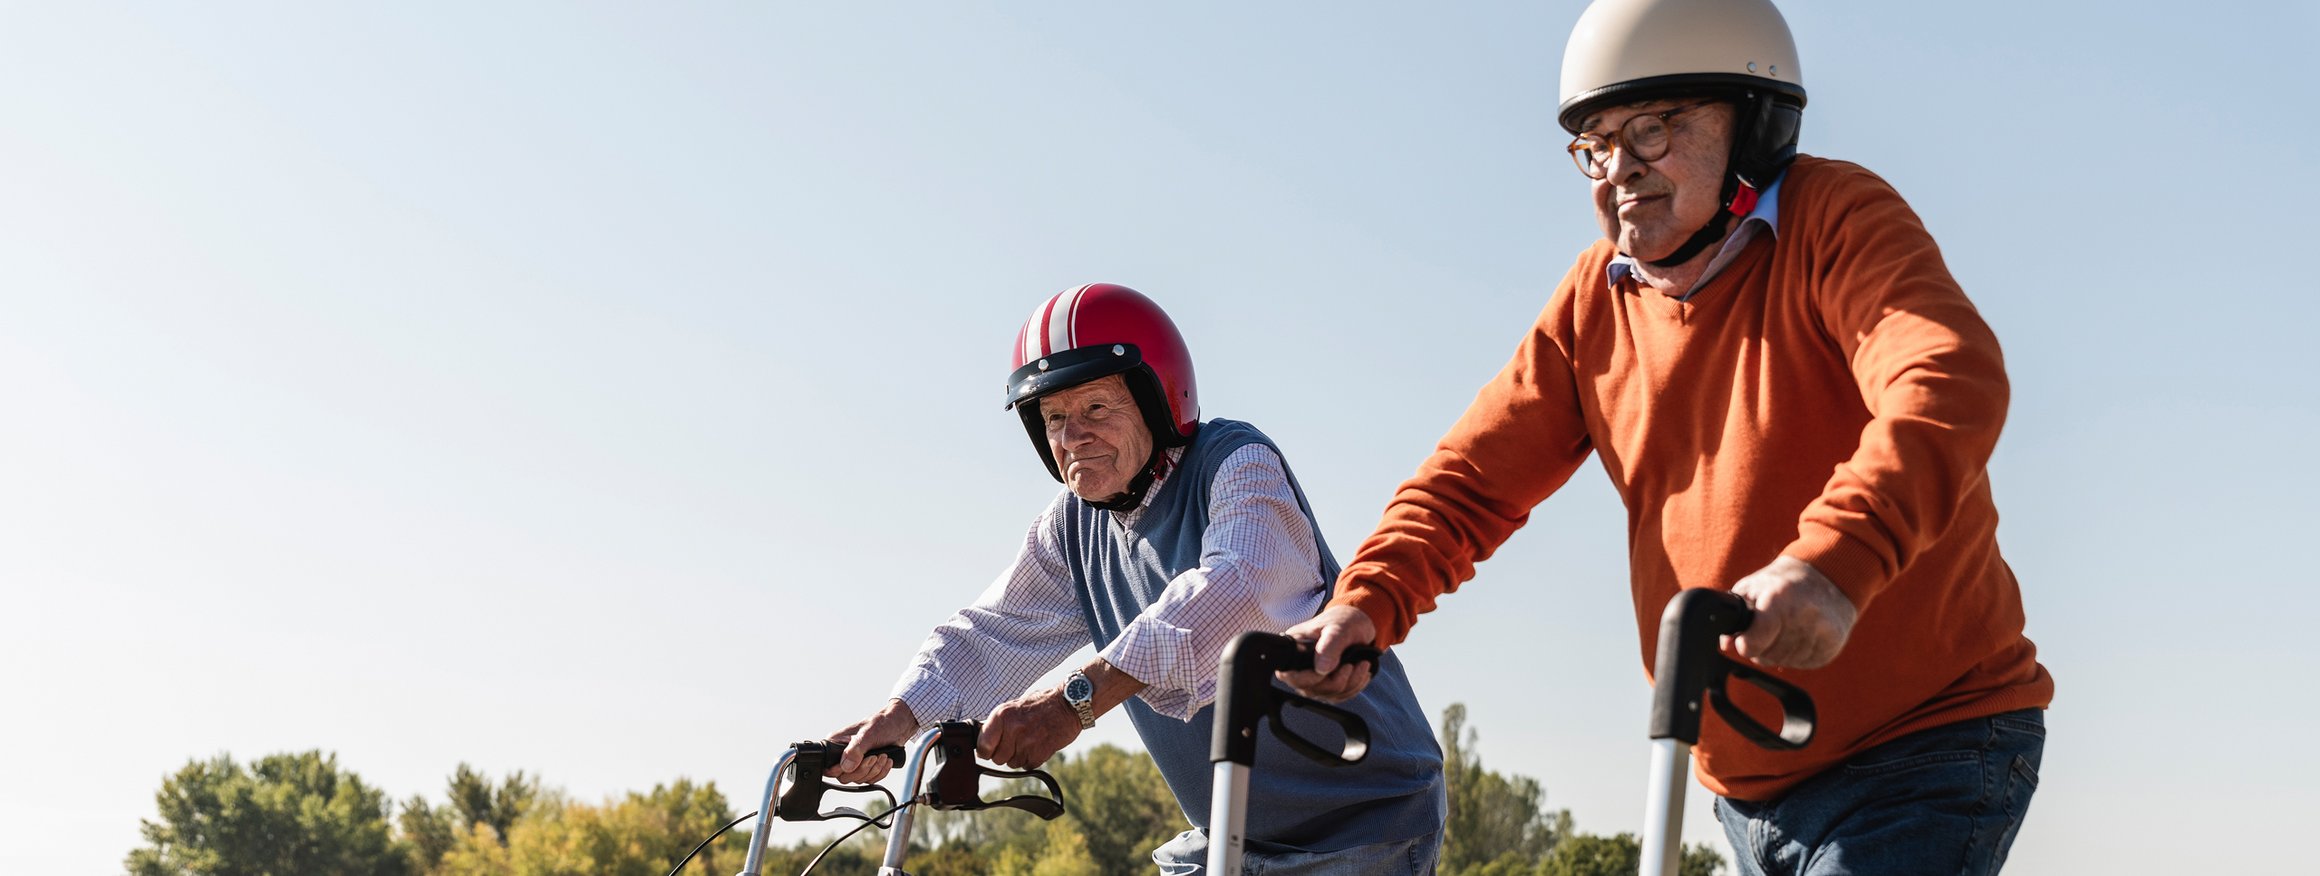 Zwei alte Männer tragen Helme und laufen vergnügt mit ihrem Rollatoren die Straße entlang